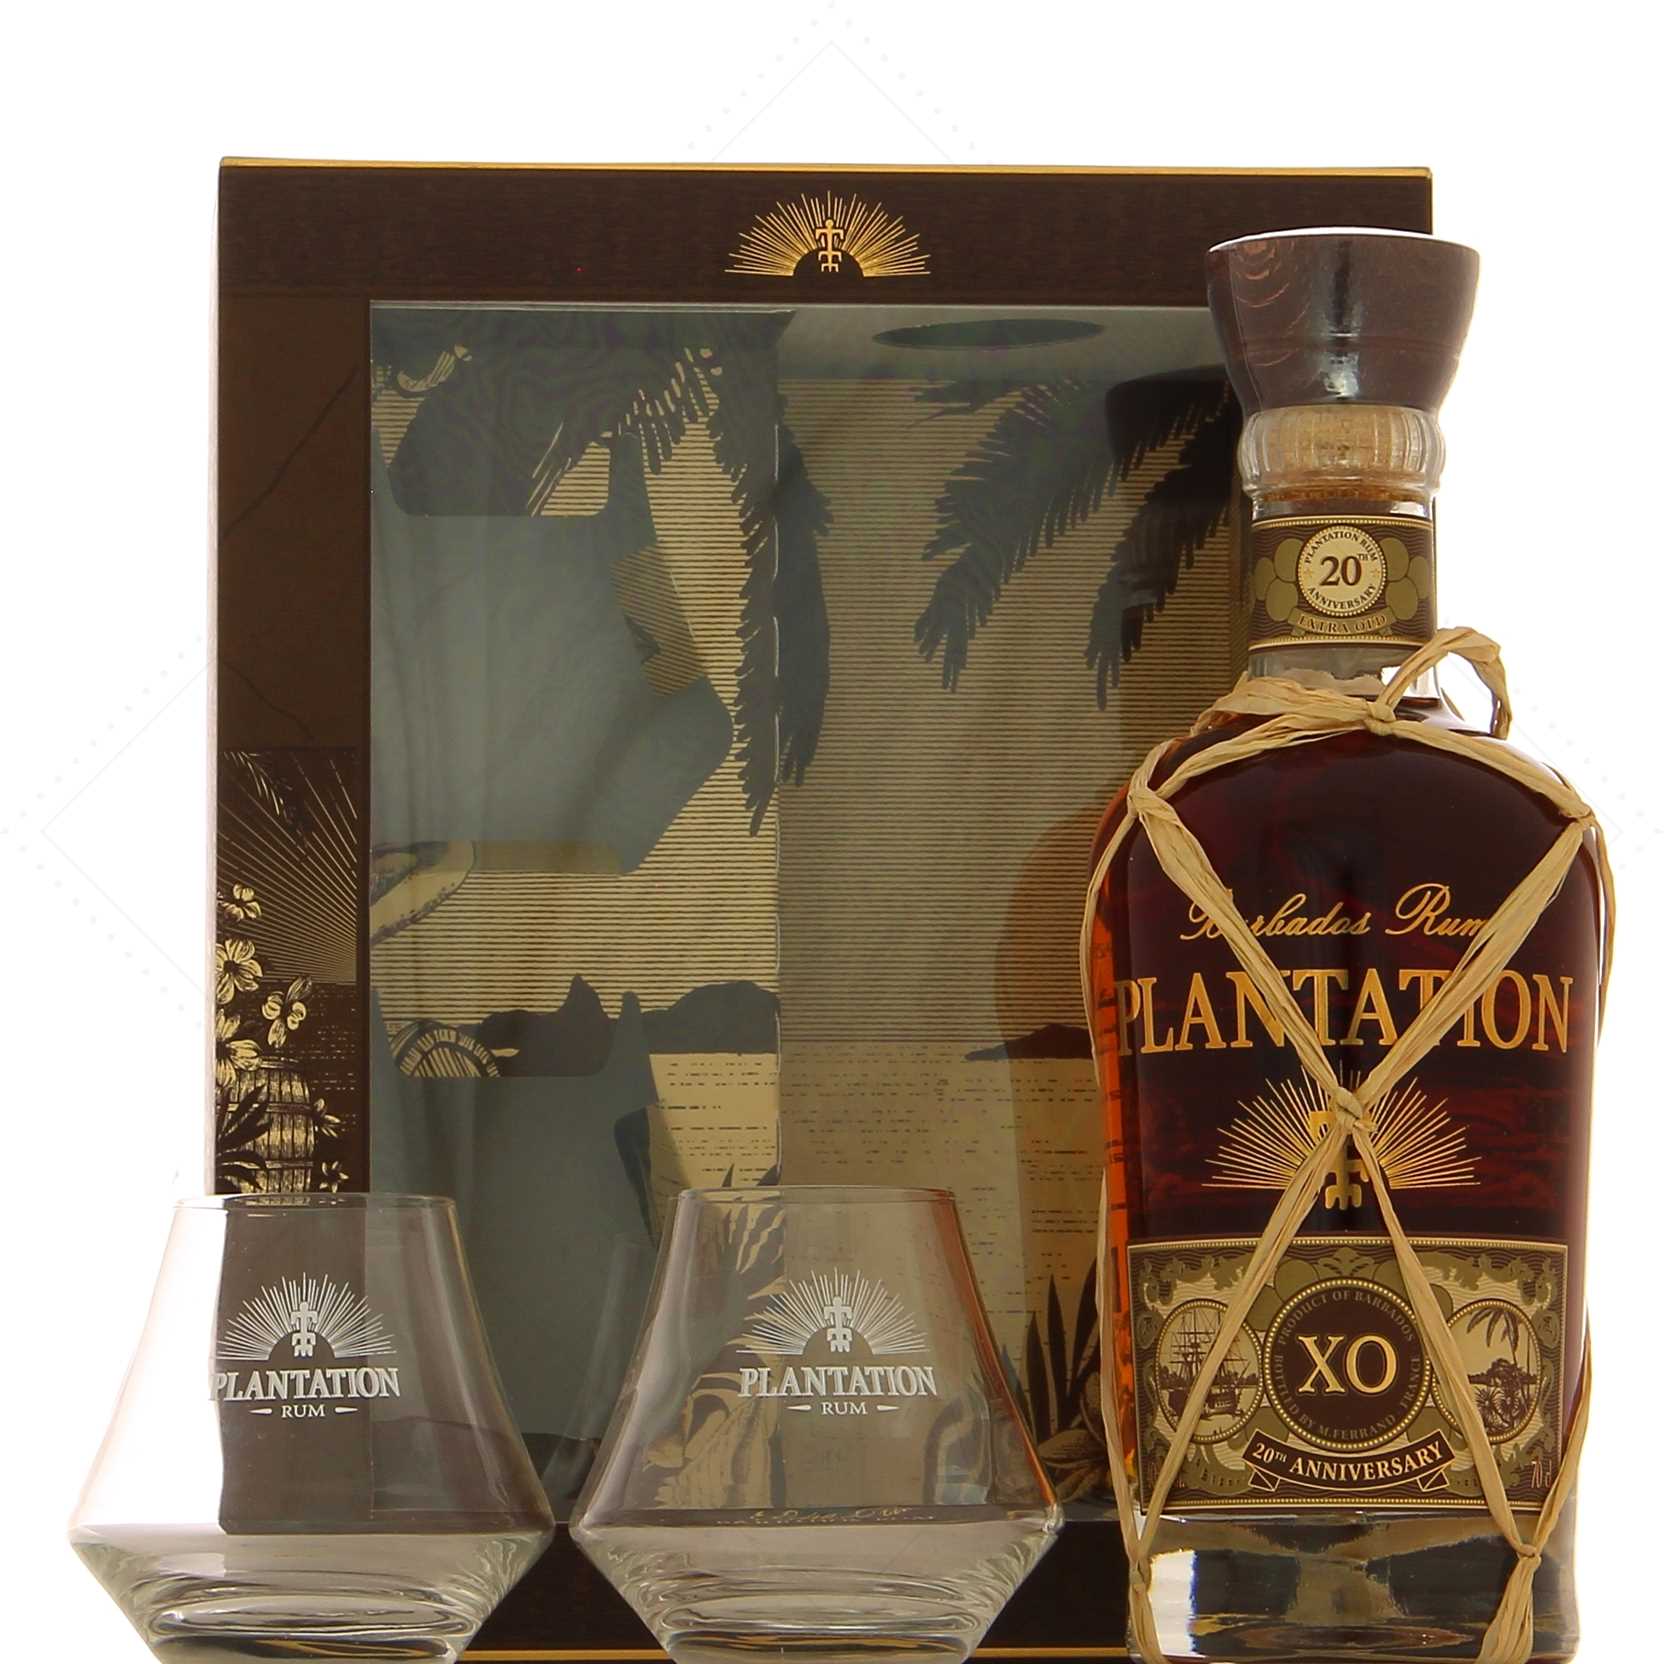 Plantation Rum Barbados XO 20th Anniversary 40° set Boxed - Attitude 2 glasses warm Rhum